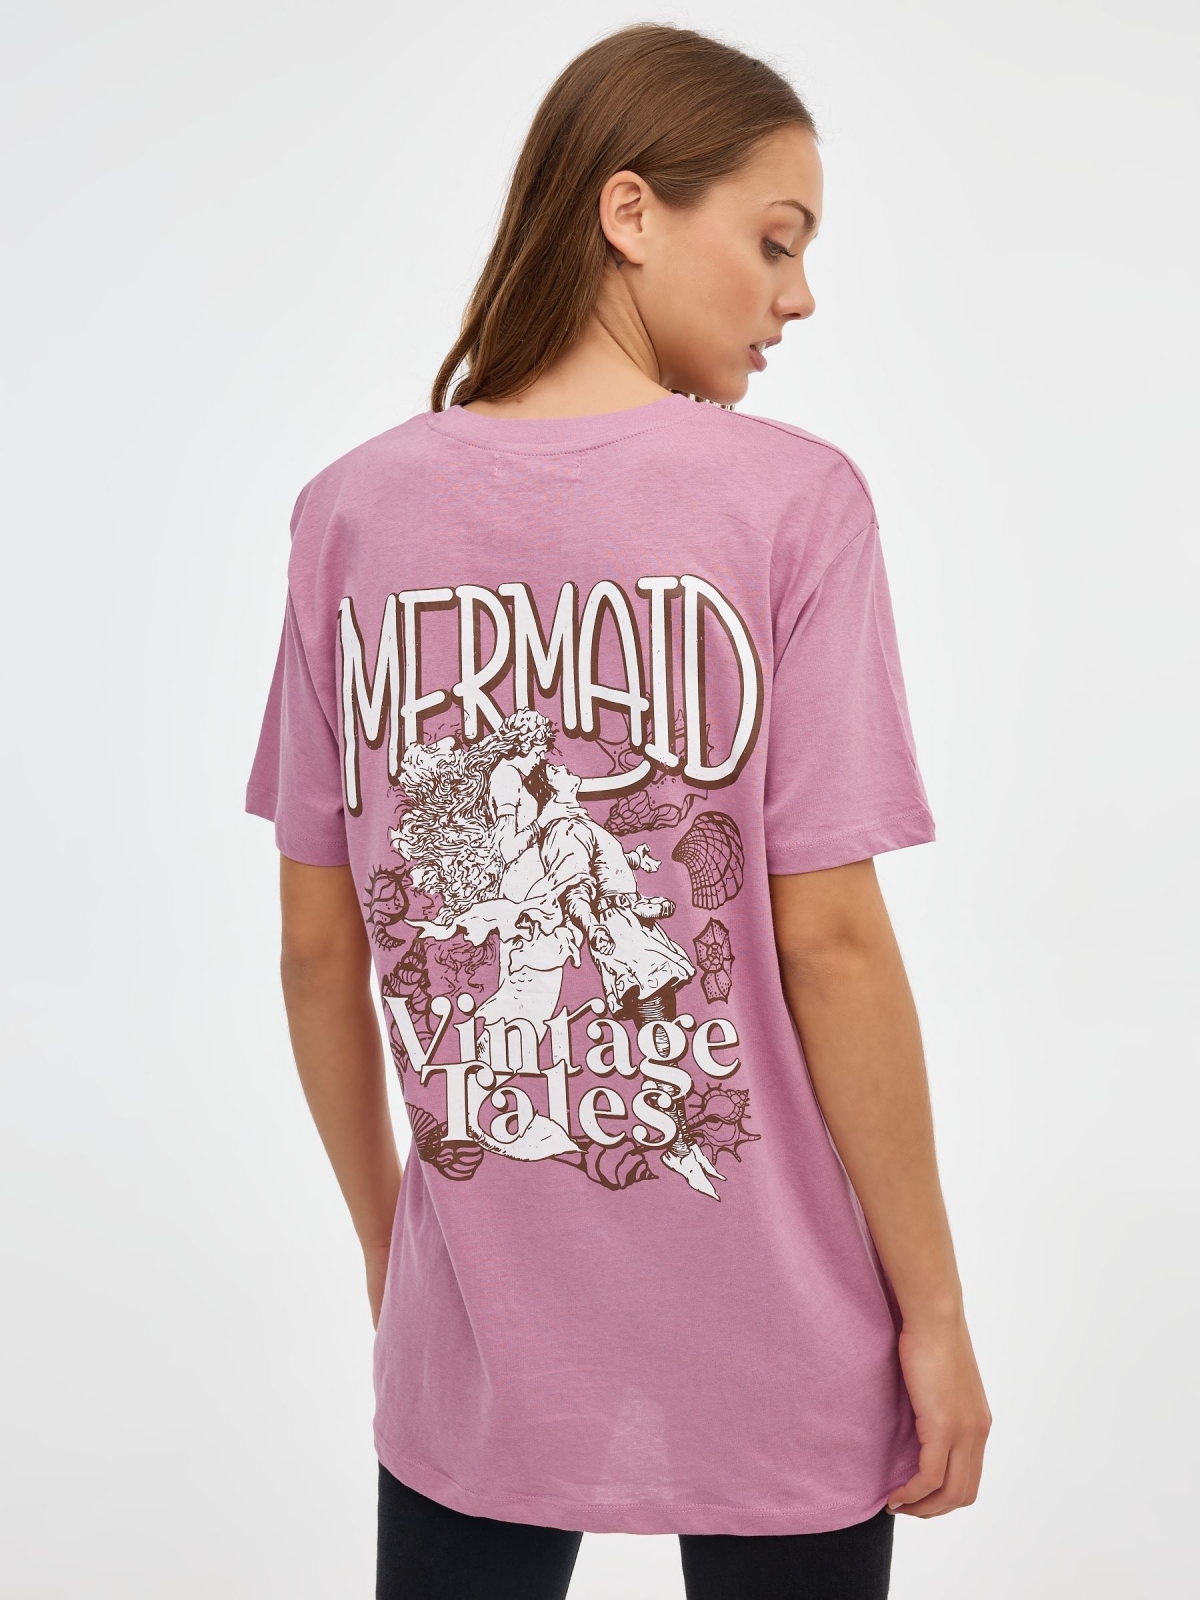 T-shirt da Sereia sobredimensionada rosa vista meia traseira